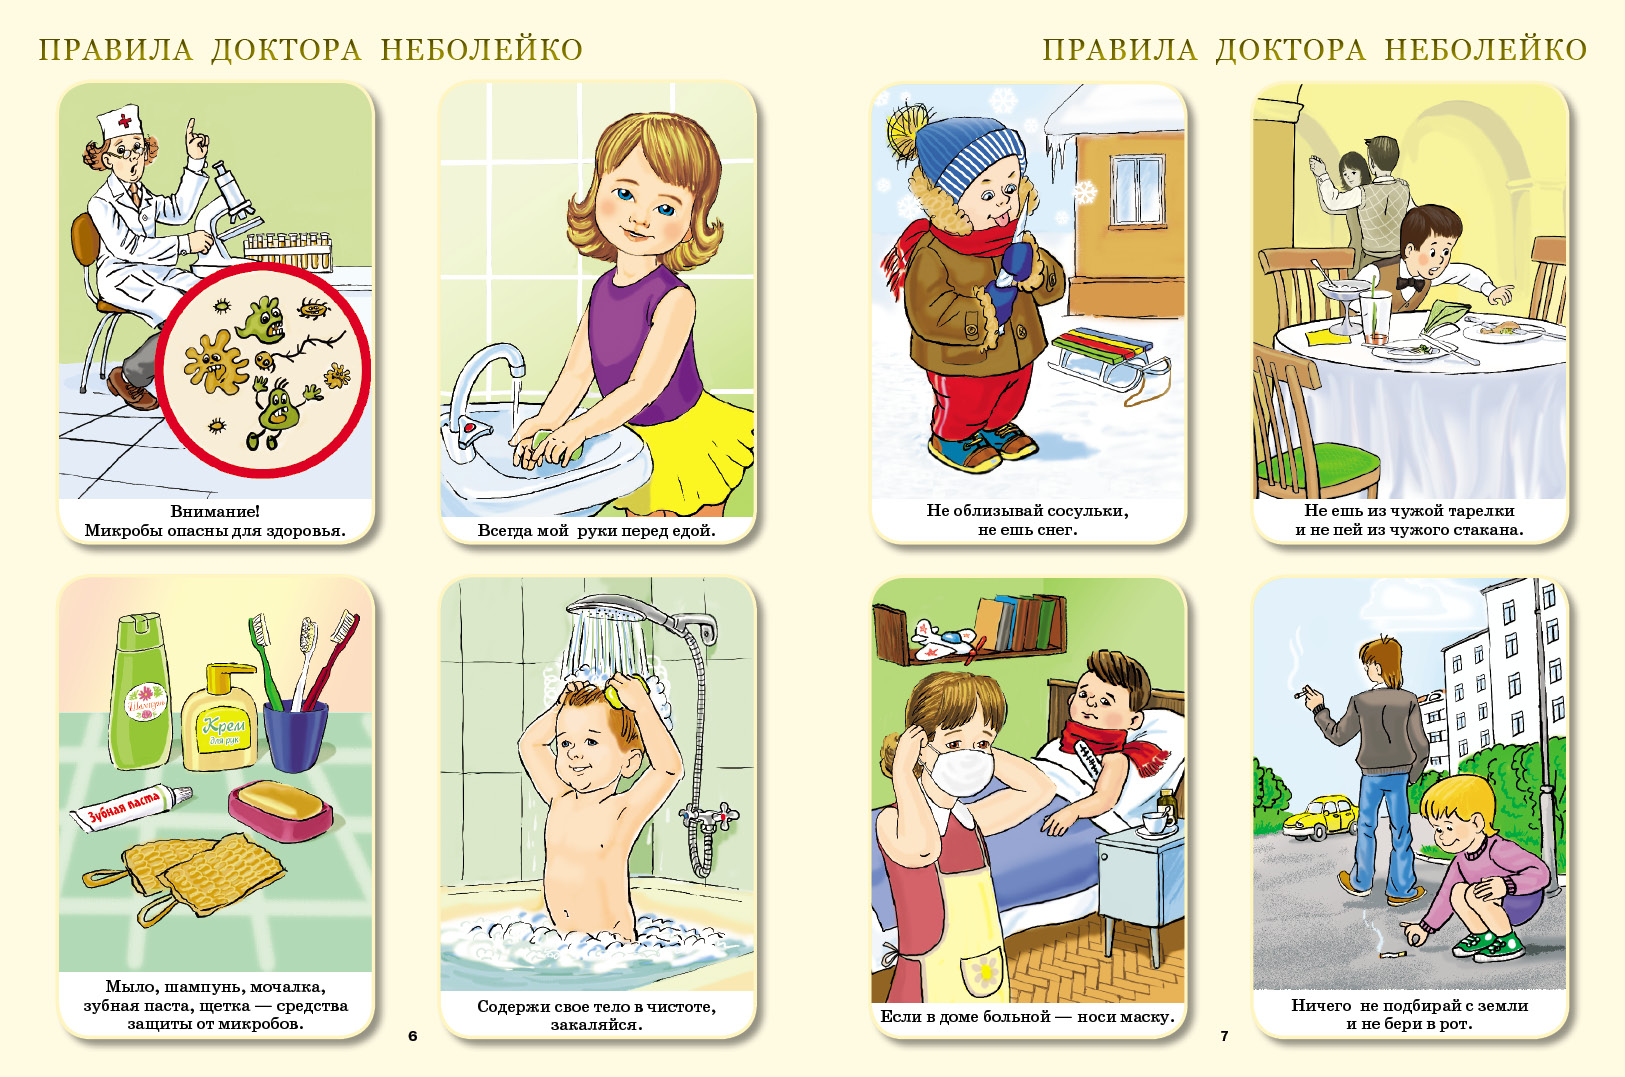 Гигиена картинки для детей